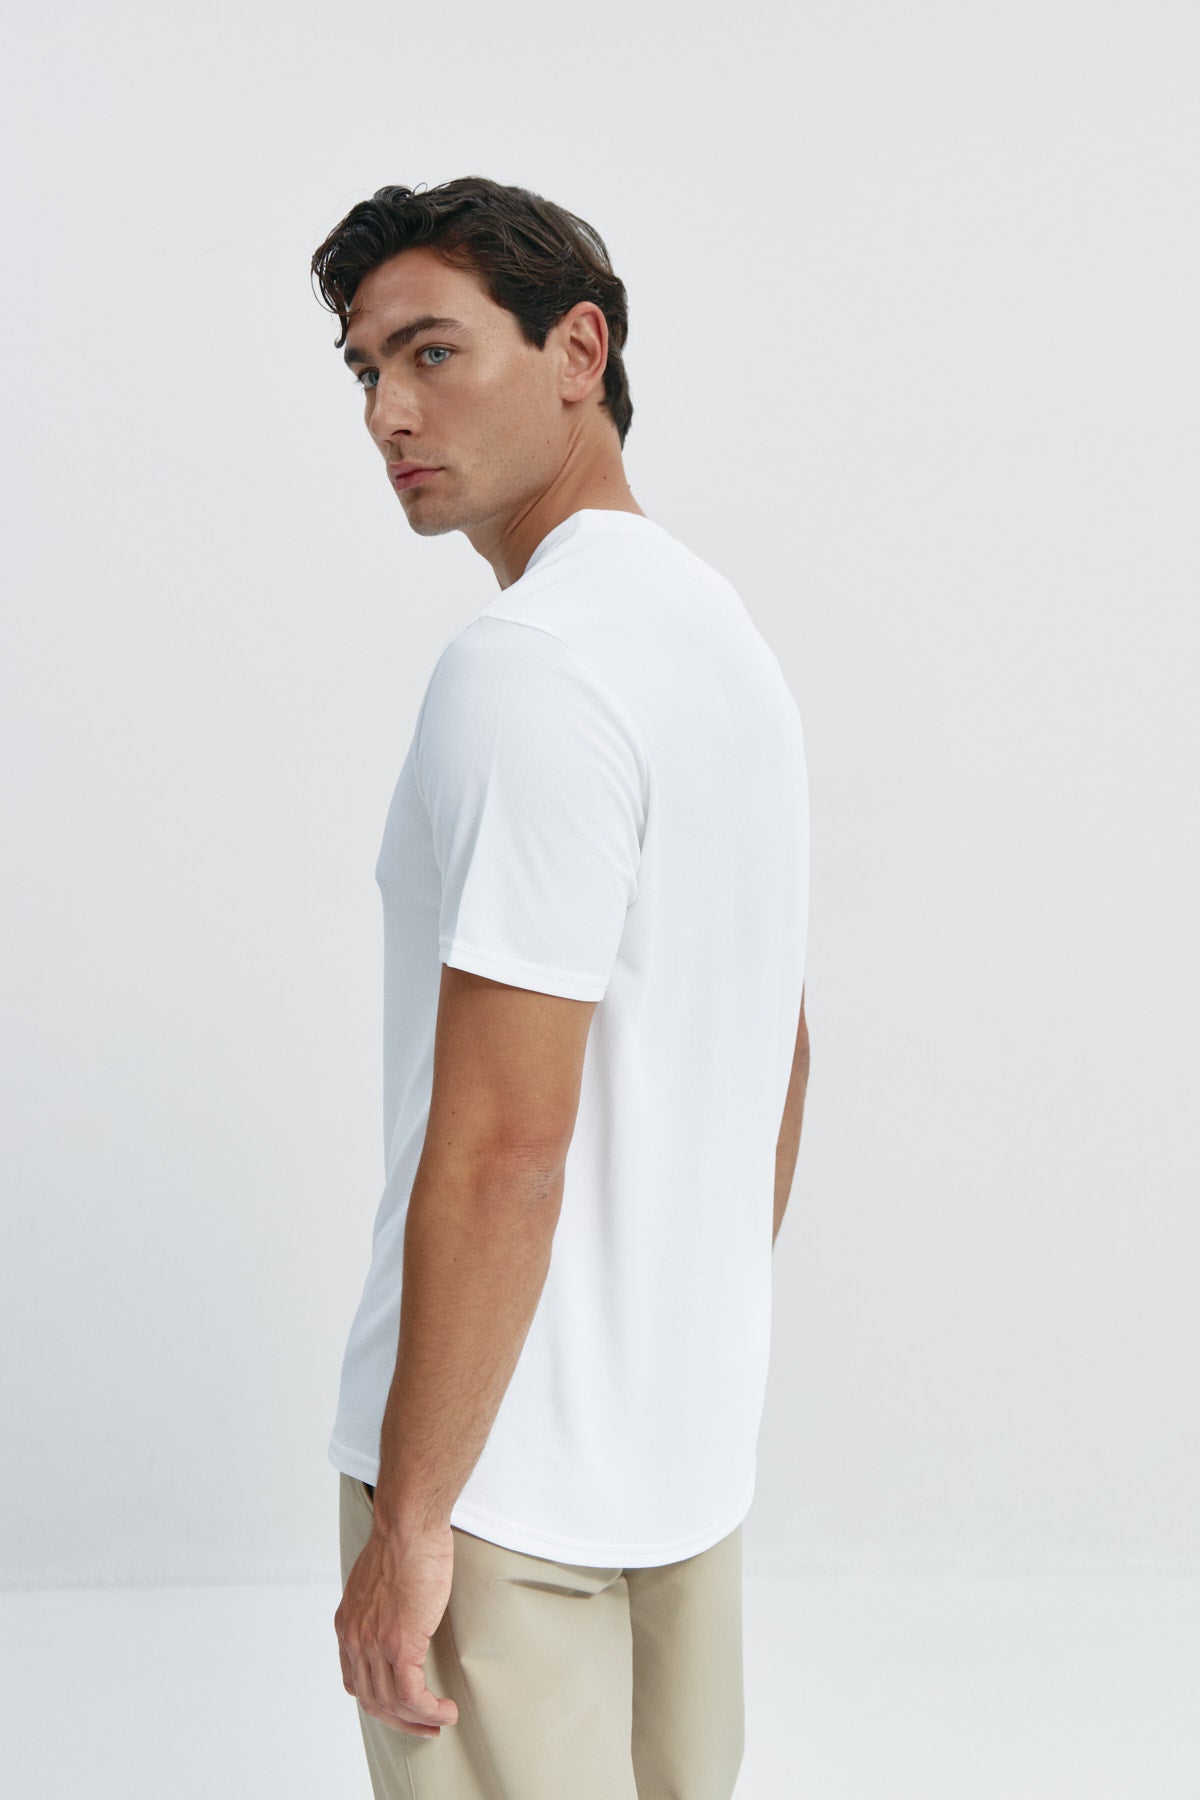 Camiseta de hombre estampada de rayas marino: Camiseta de hombre de rayas marino de manga corta, antiarrugas y antimanchas. Foto espalda.